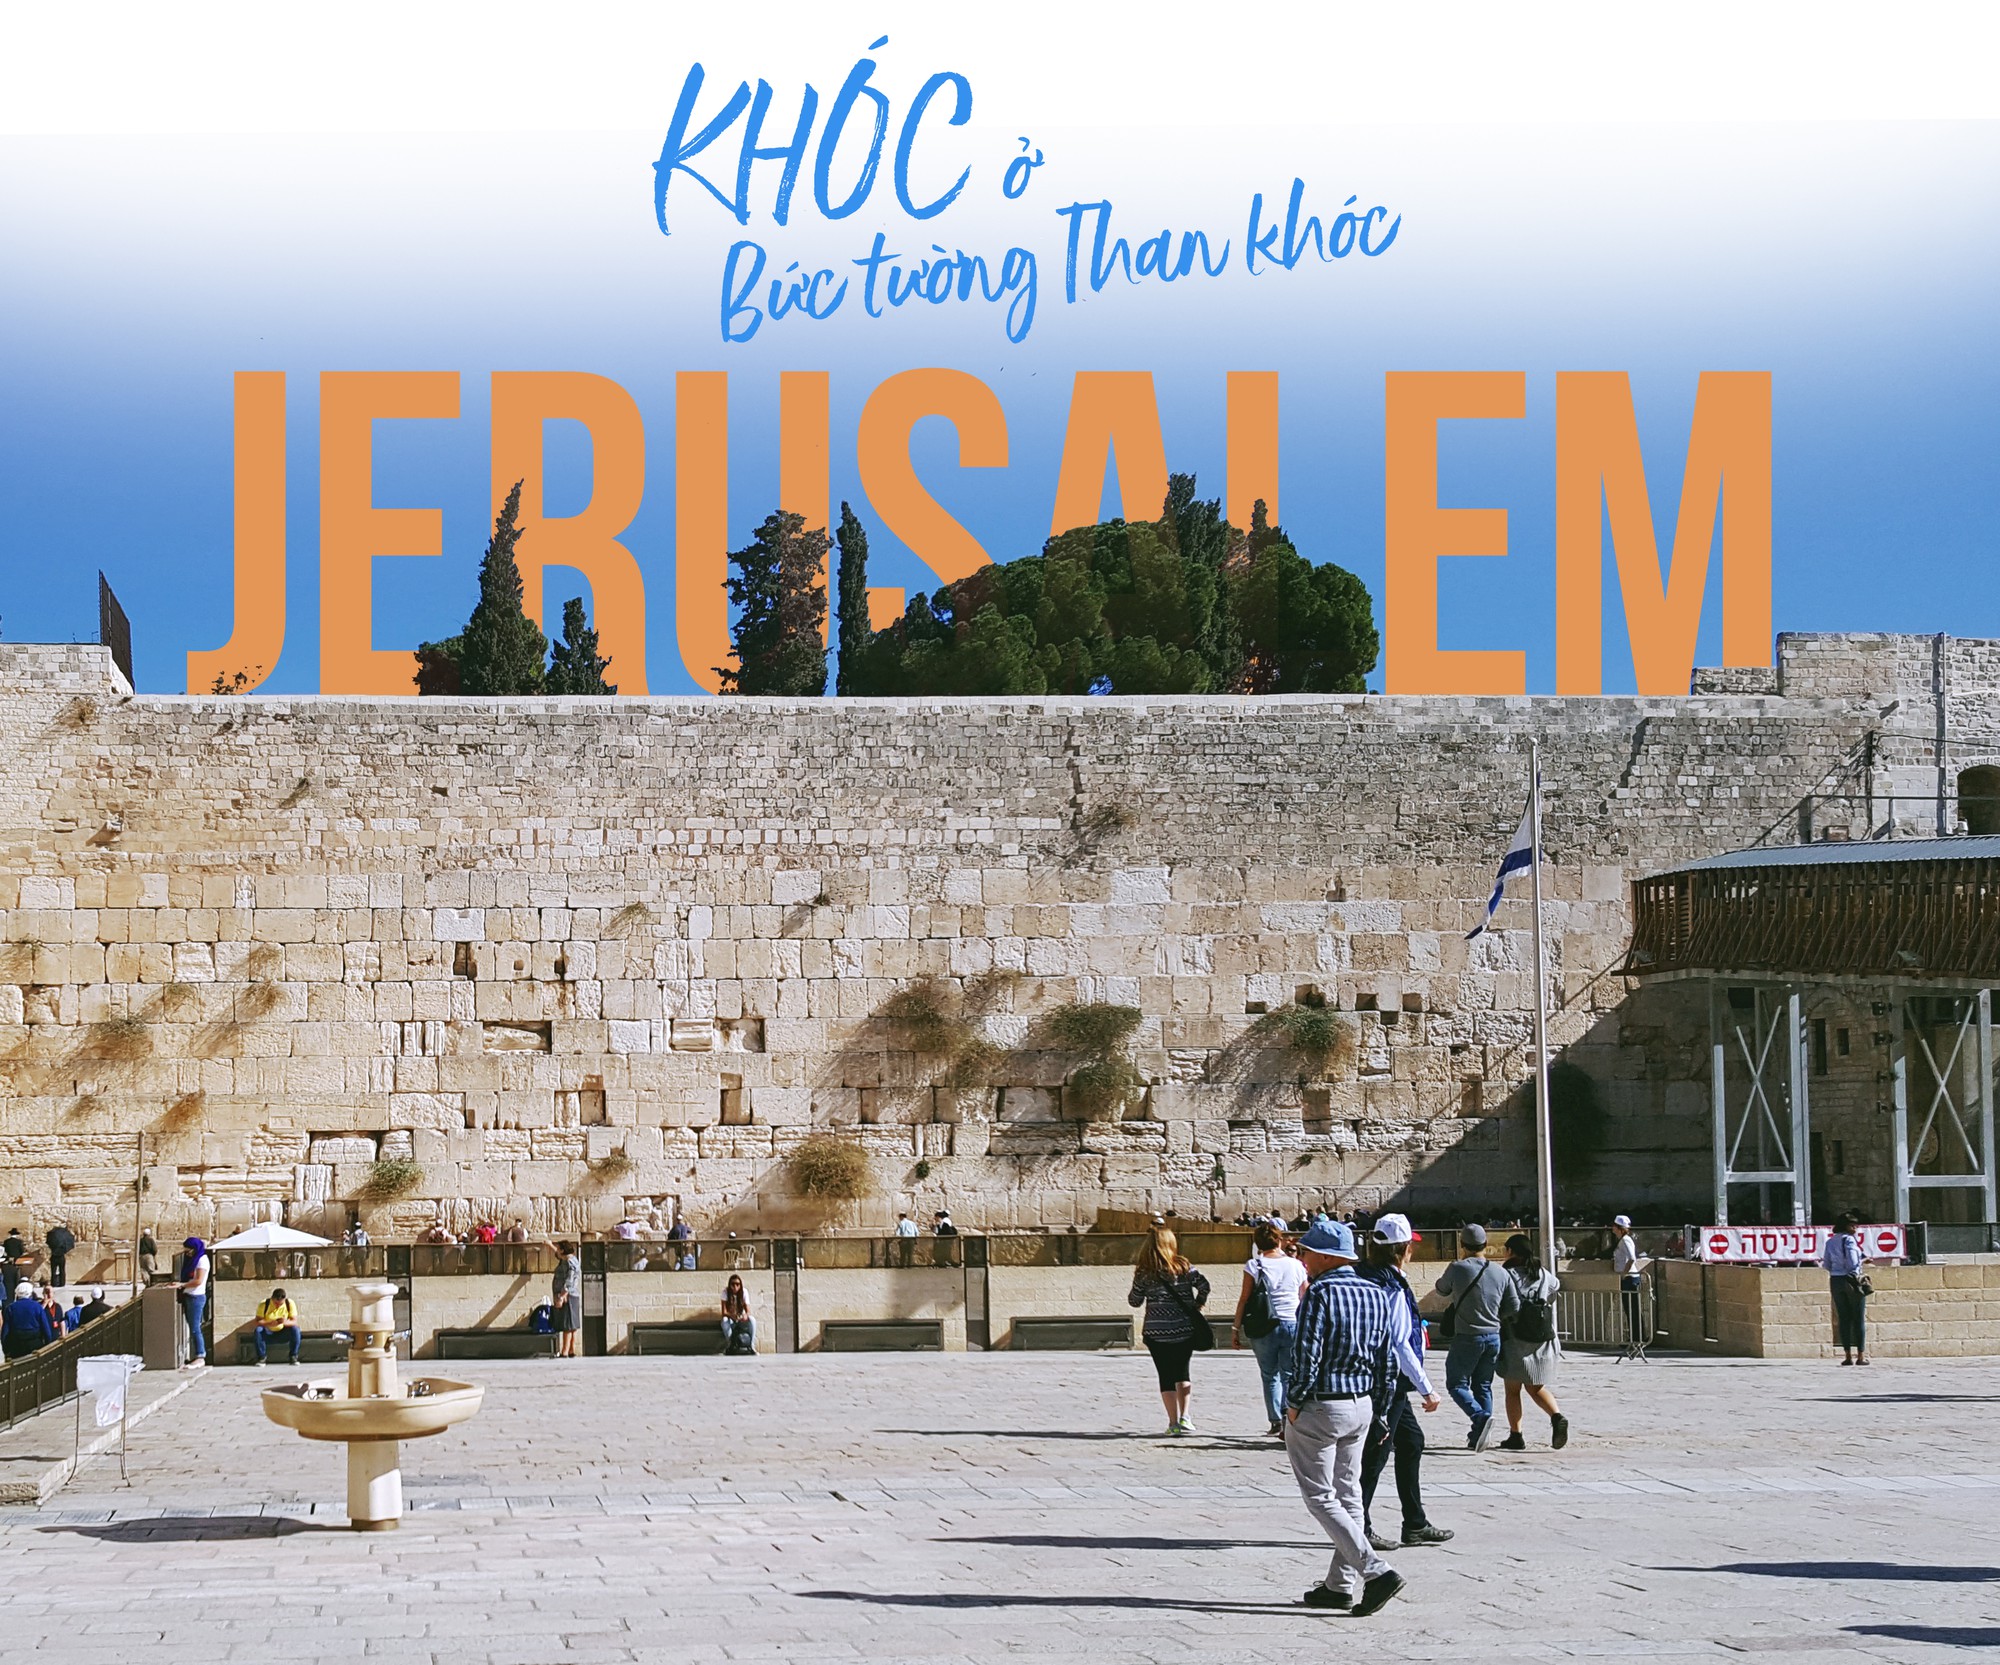 [PHOTO ESSAY] Hành trình tới thánh địa Jerusalem: Dưới chân bức tường Than Khóc - Ảnh 15.